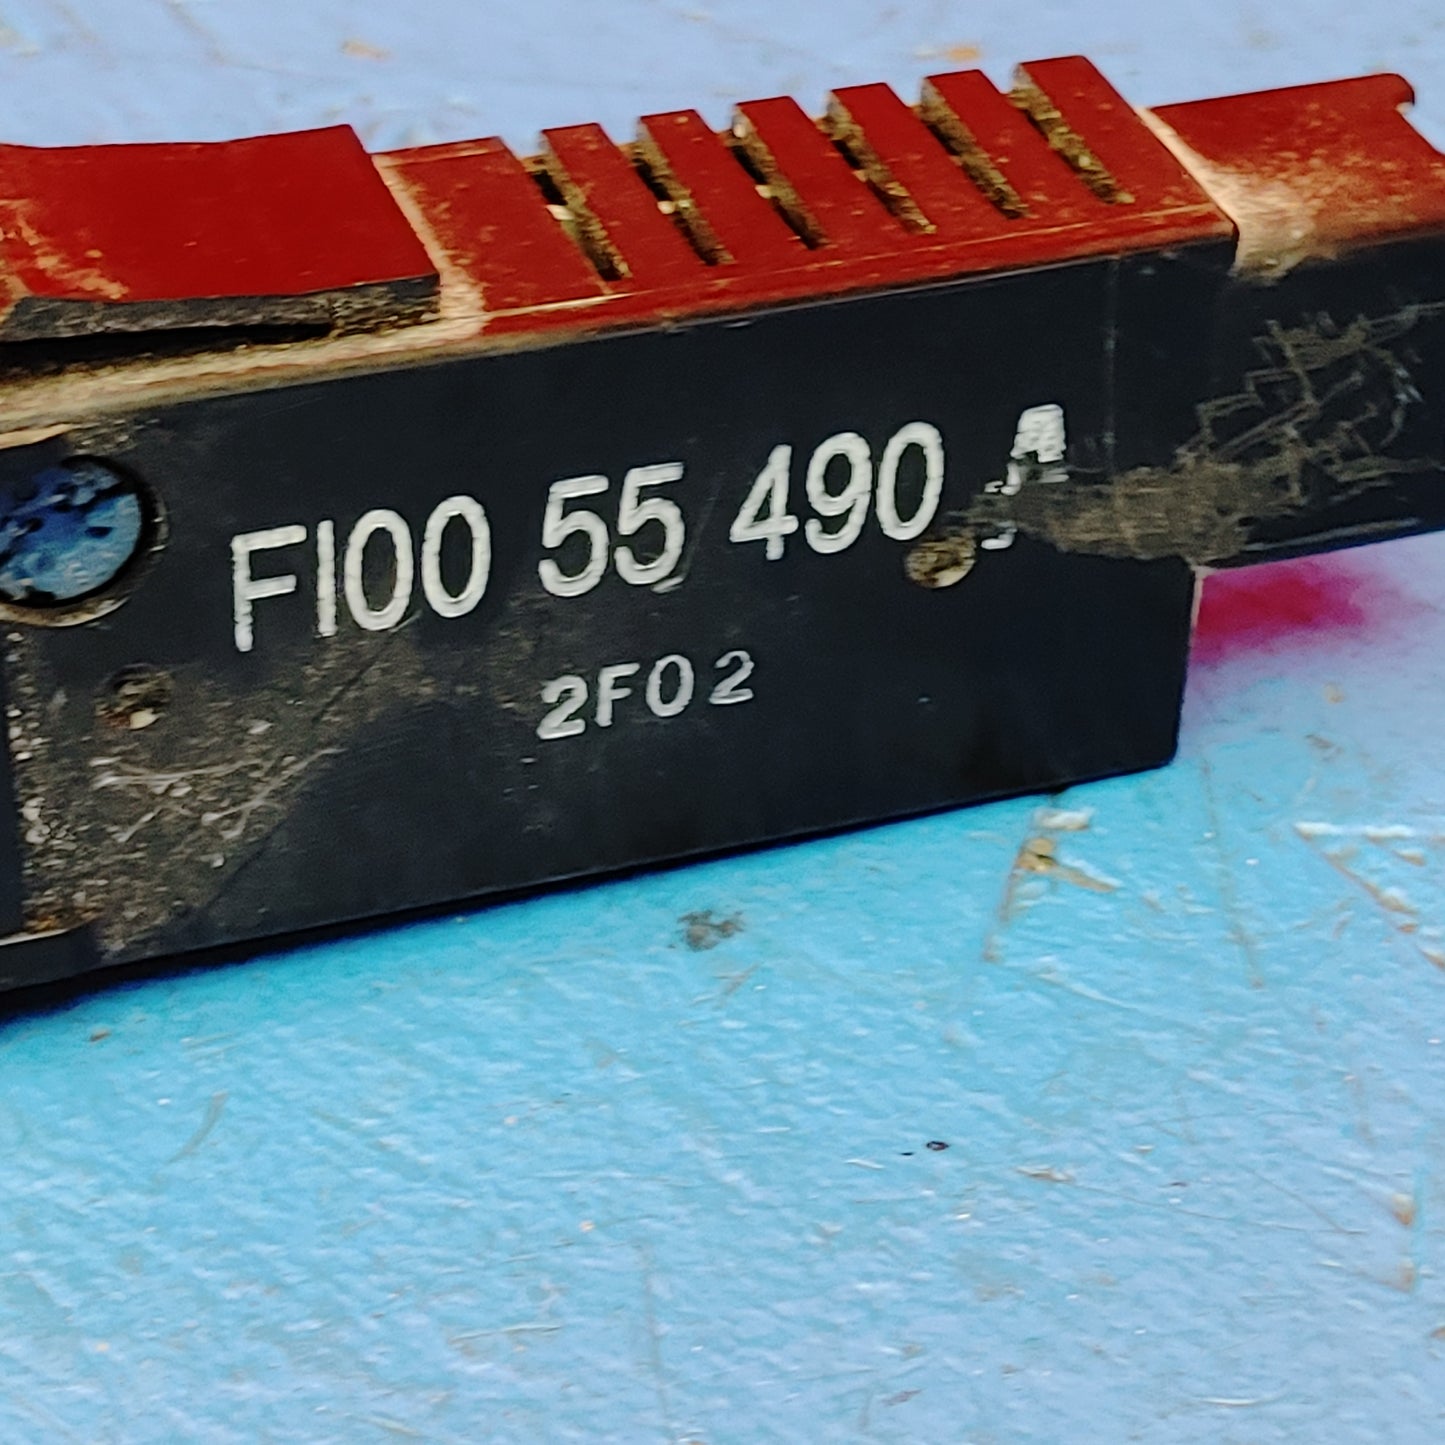 RHD Illumination Intensity Dimmer Control Switch F100-55-490 RX7 FD FD3S 93 - 02 Mazda S11B26/7